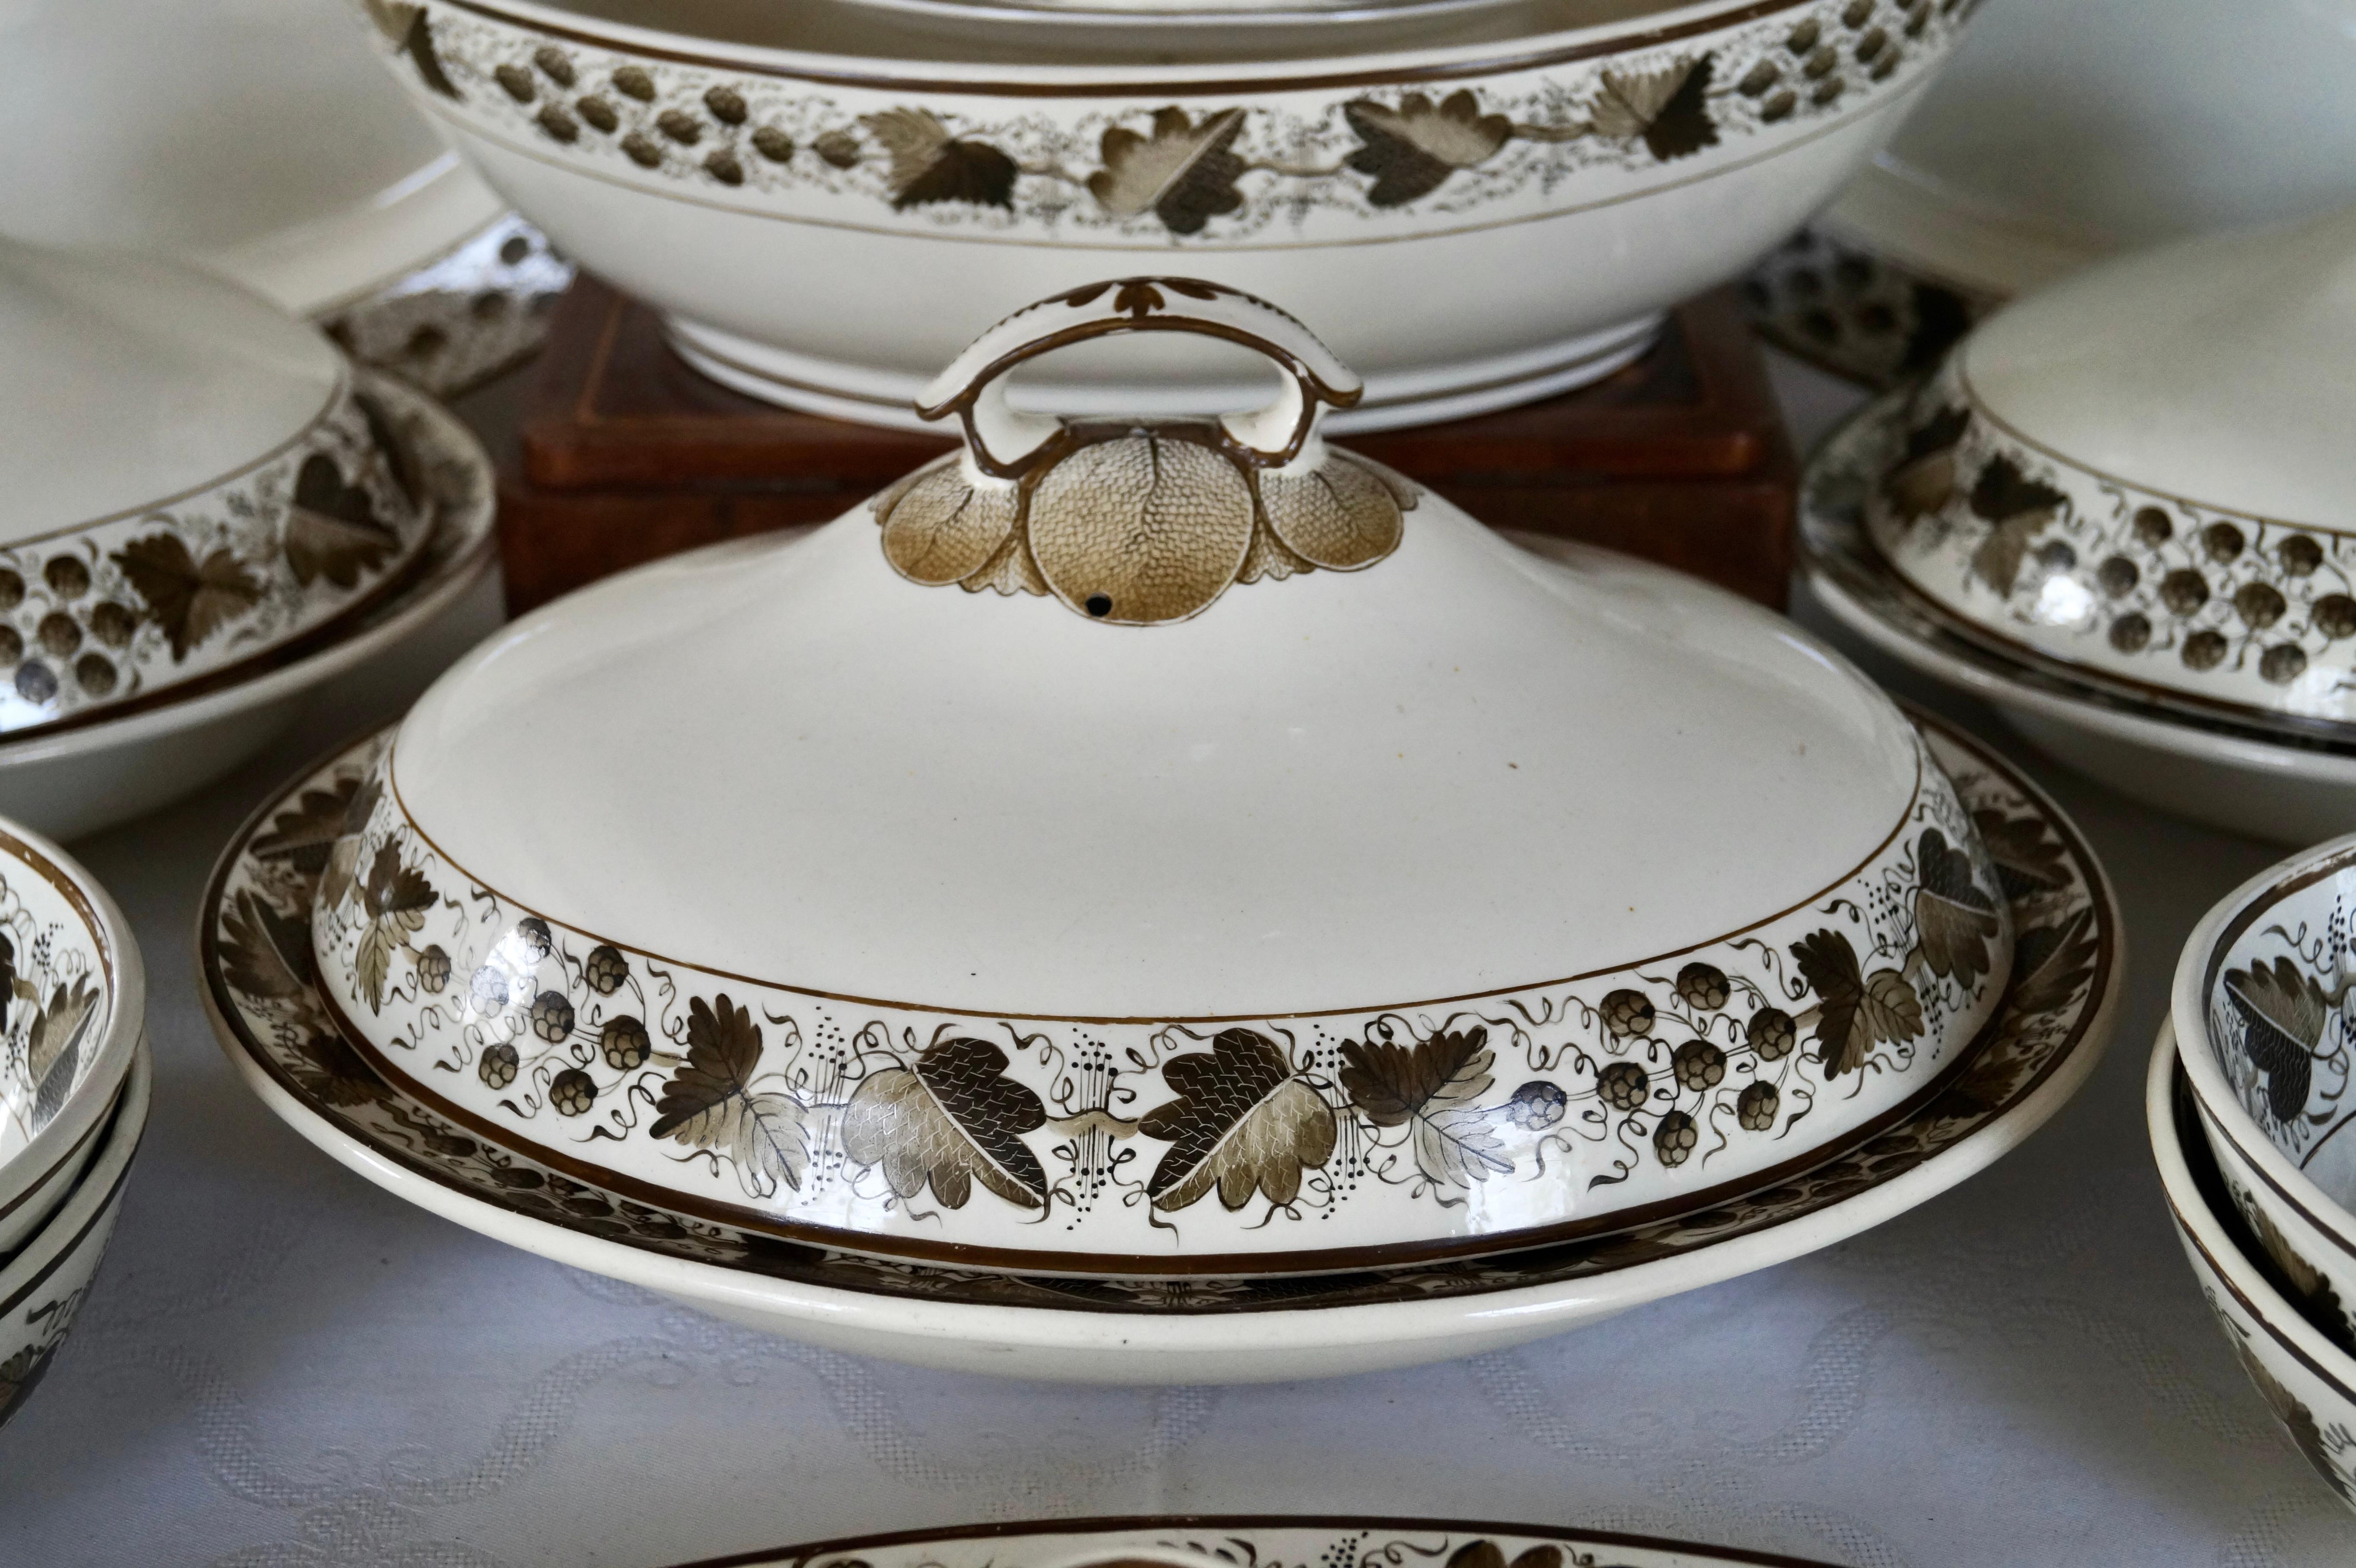 Magnifiques pièces de vaisselle à la crème de Copeland Spode vers les années 1800

Les bordures extérieures et intérieures sont peintes à la main et décorées de feuilles de chêne et de noyer, de châtaignes dans la couleur marron. Le numéro du modèle